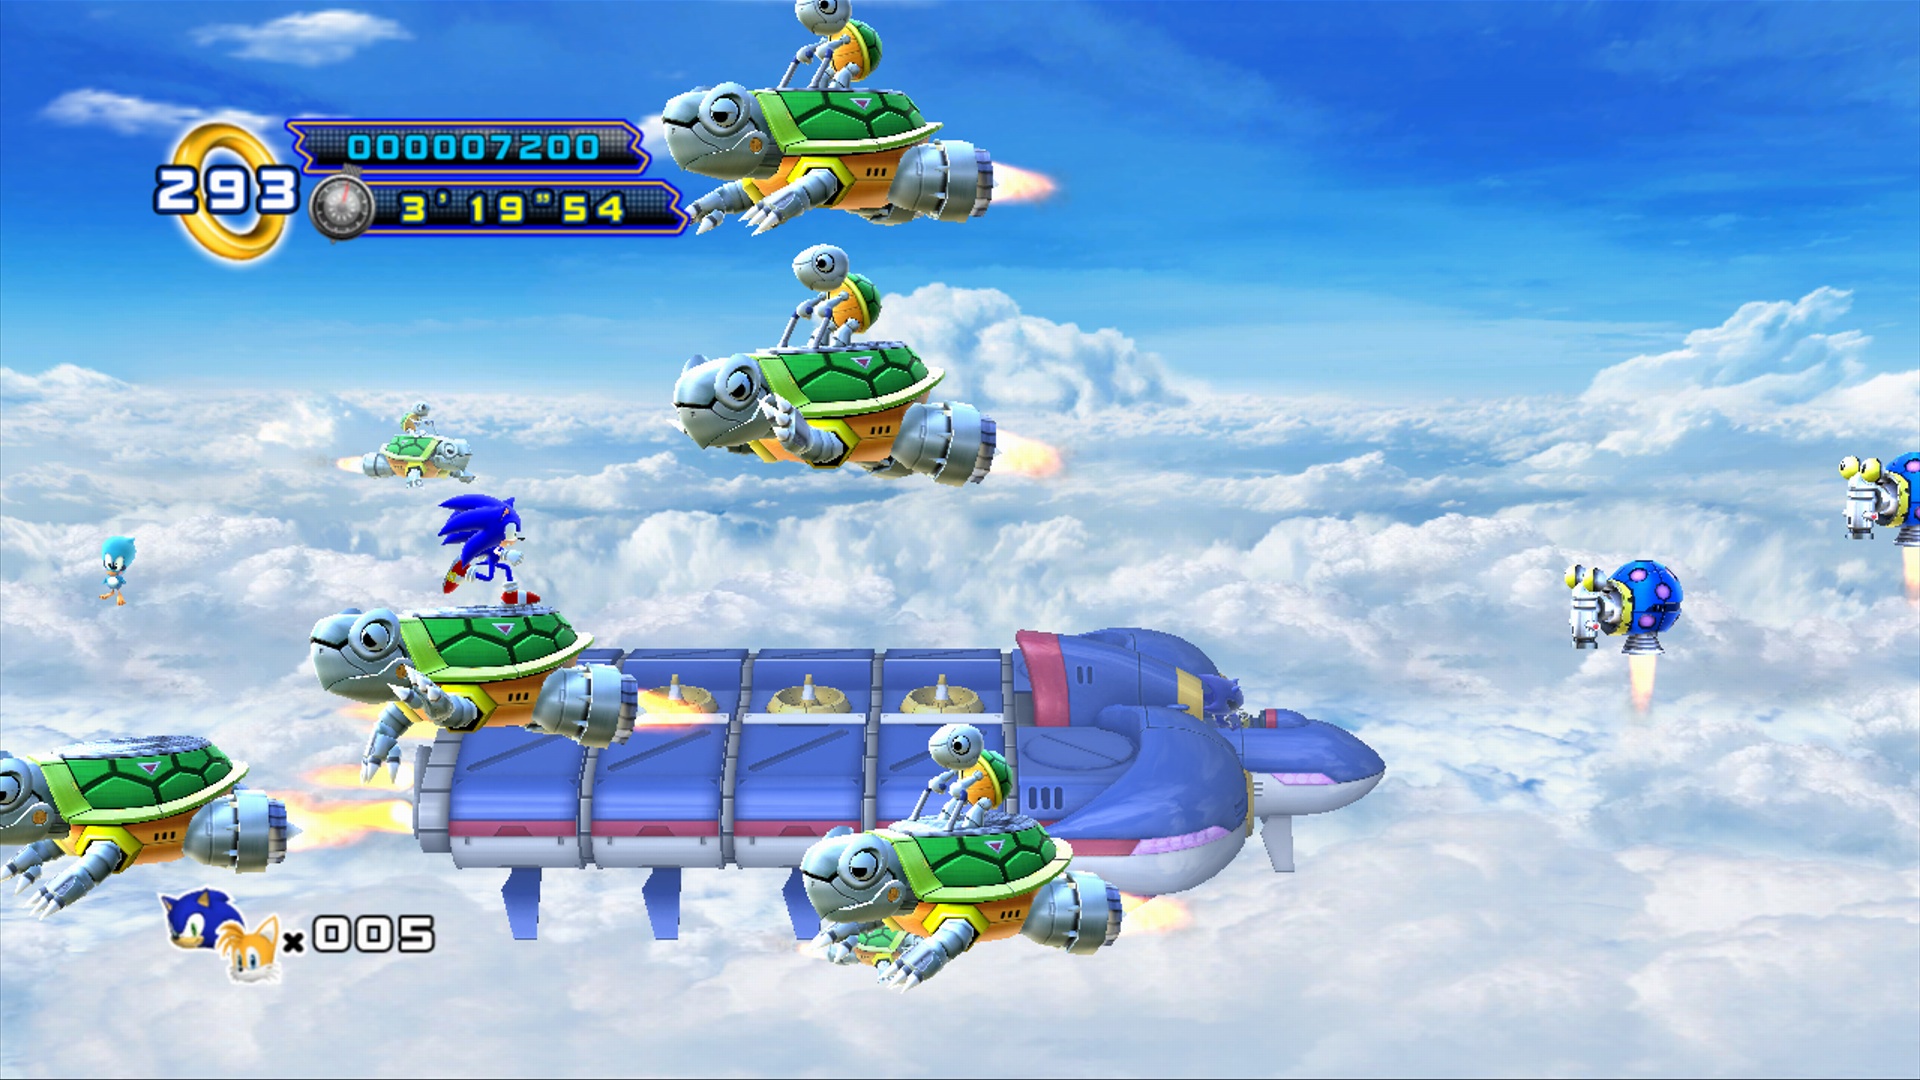 Sonic the Hedgehog 4: Episode II (2012)